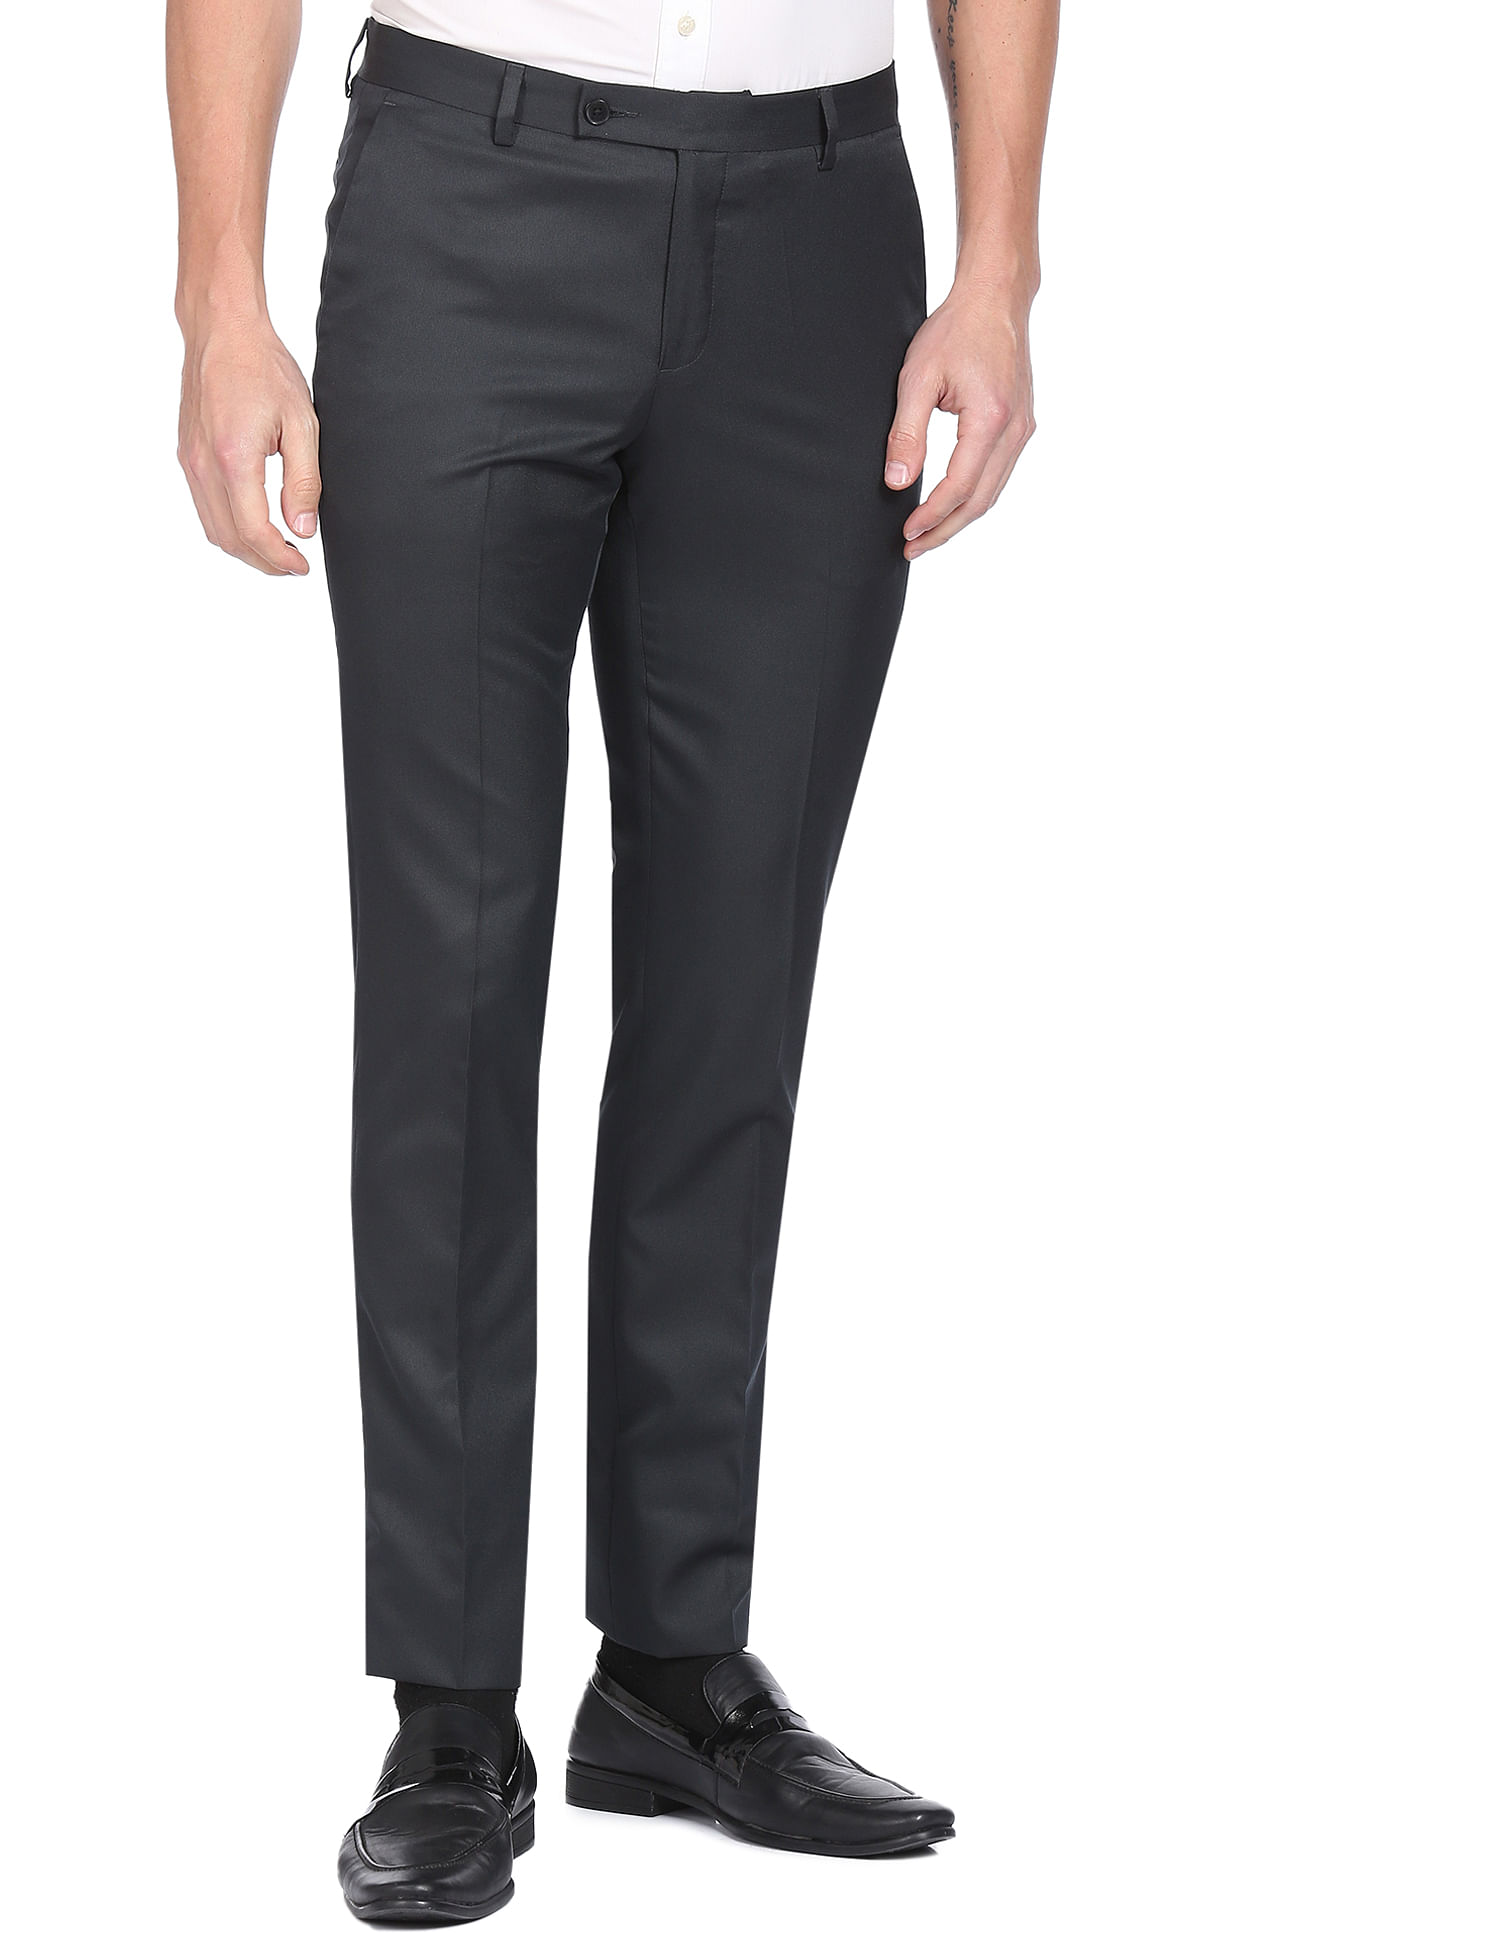 Formal Pants For Men - Buy Men's Formal Trousers Online | JadeBlue –  JadeBlue Lifestyle